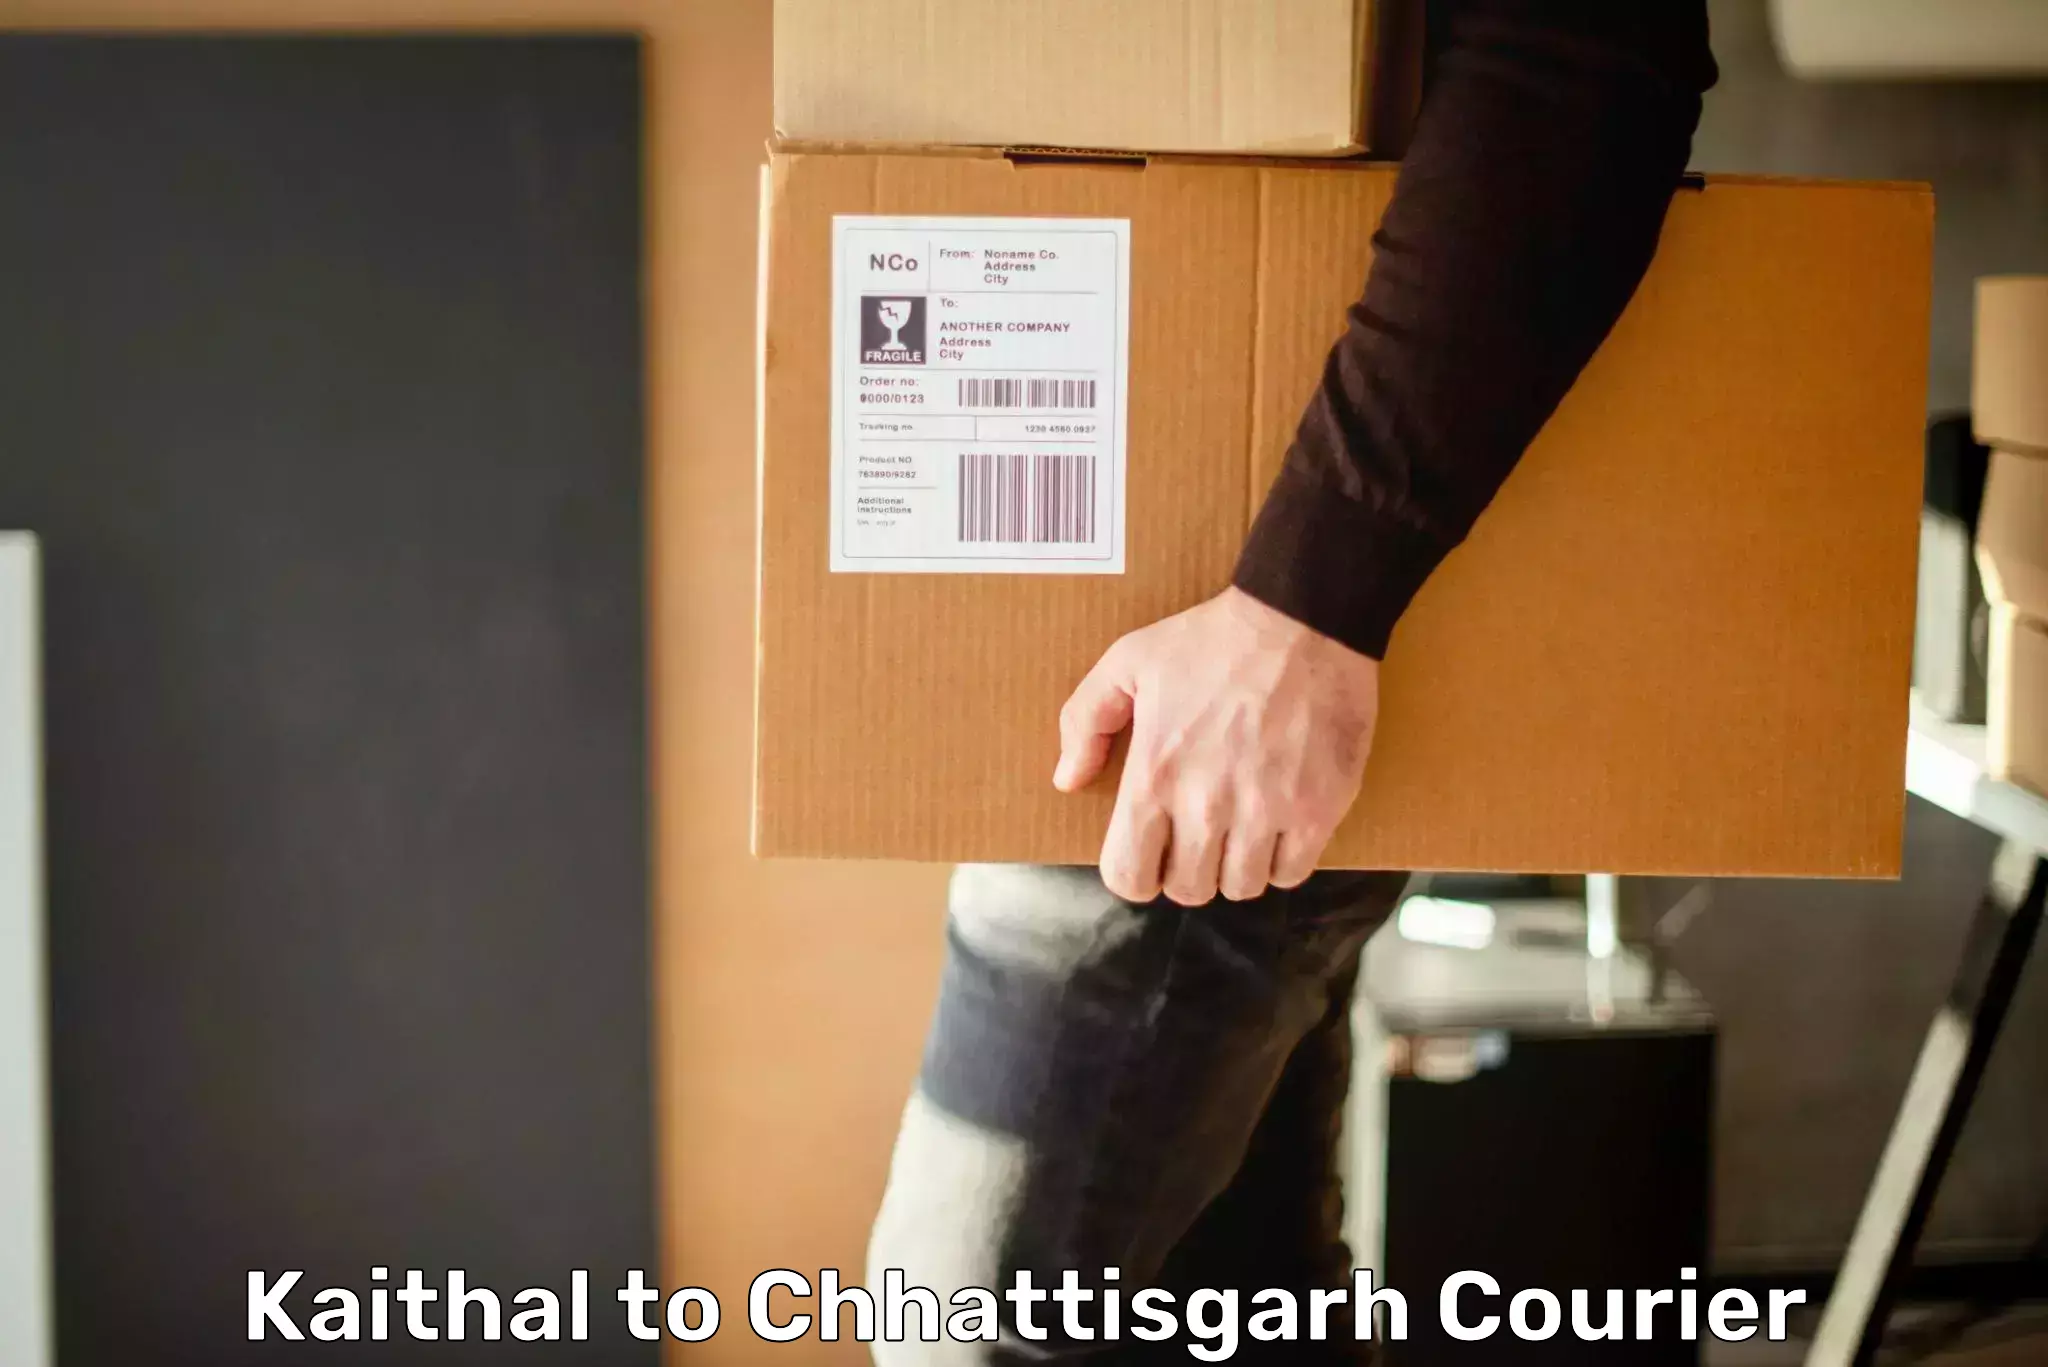 Specialized shipment handling Kaithal to Chhattisgarh